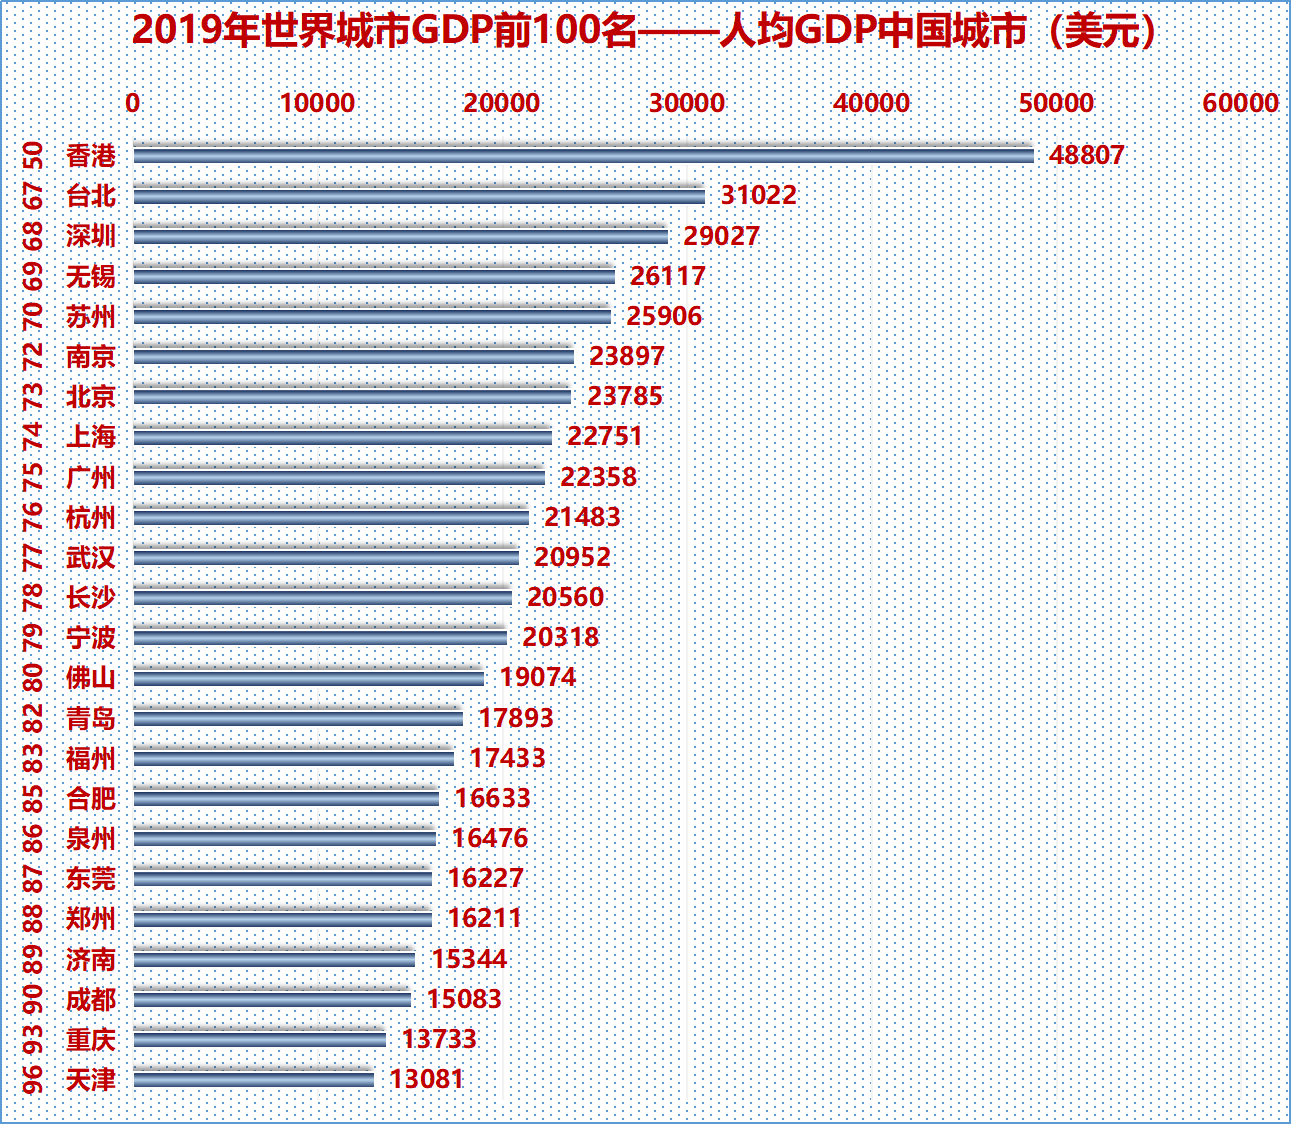 不过,中国24座进入全球gdp百强城市中人均gdp除了香港位居刚好位居第